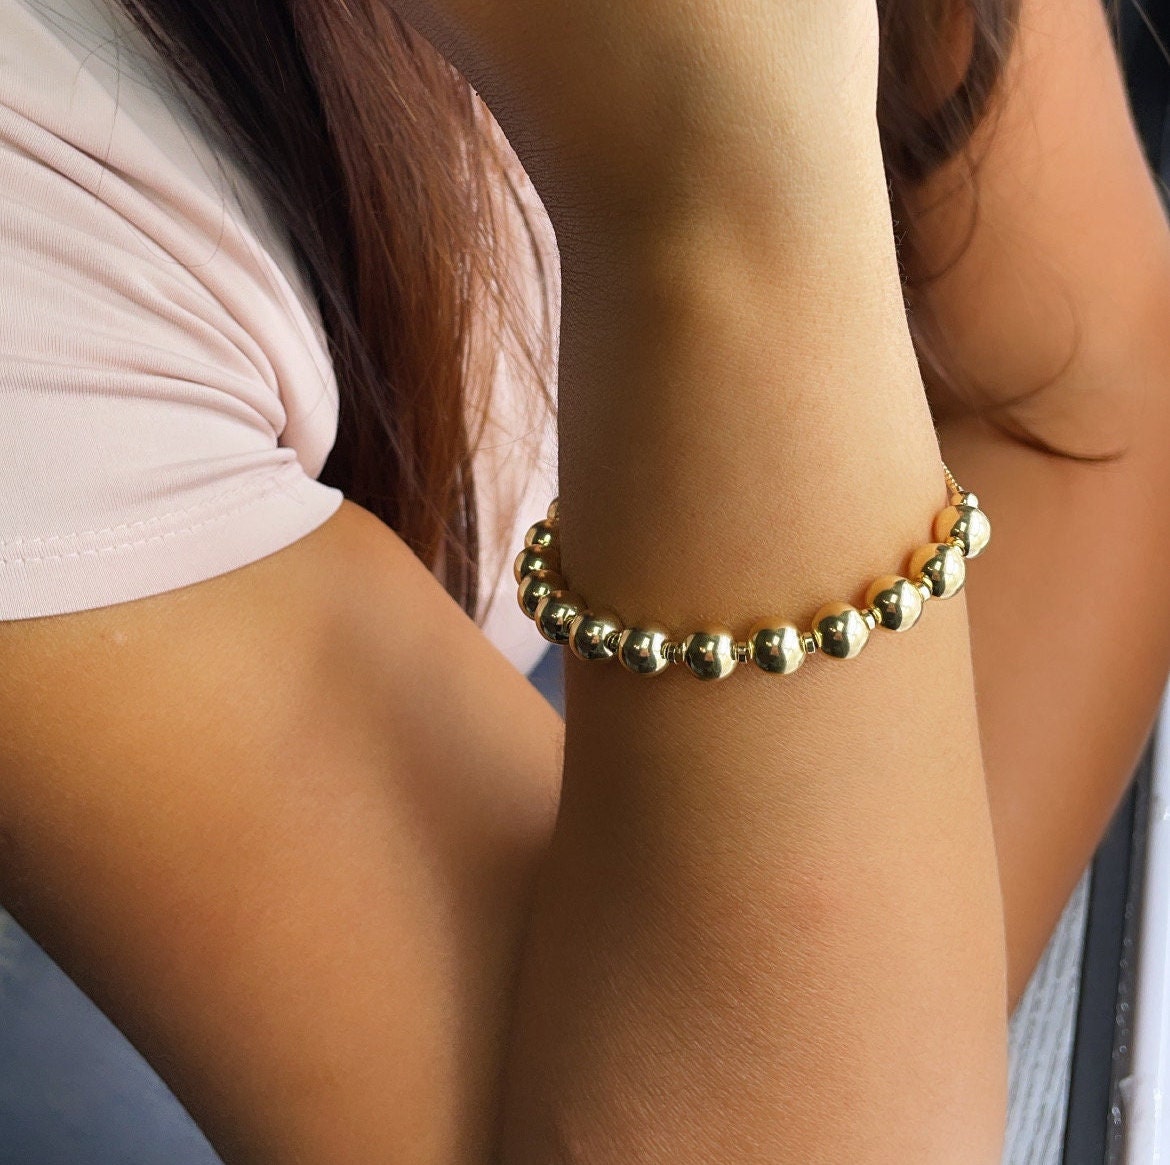 18k Gold Layered 8mm Beaded Women’s Bracelet, Gold Plain Ball Beads Bracelet,